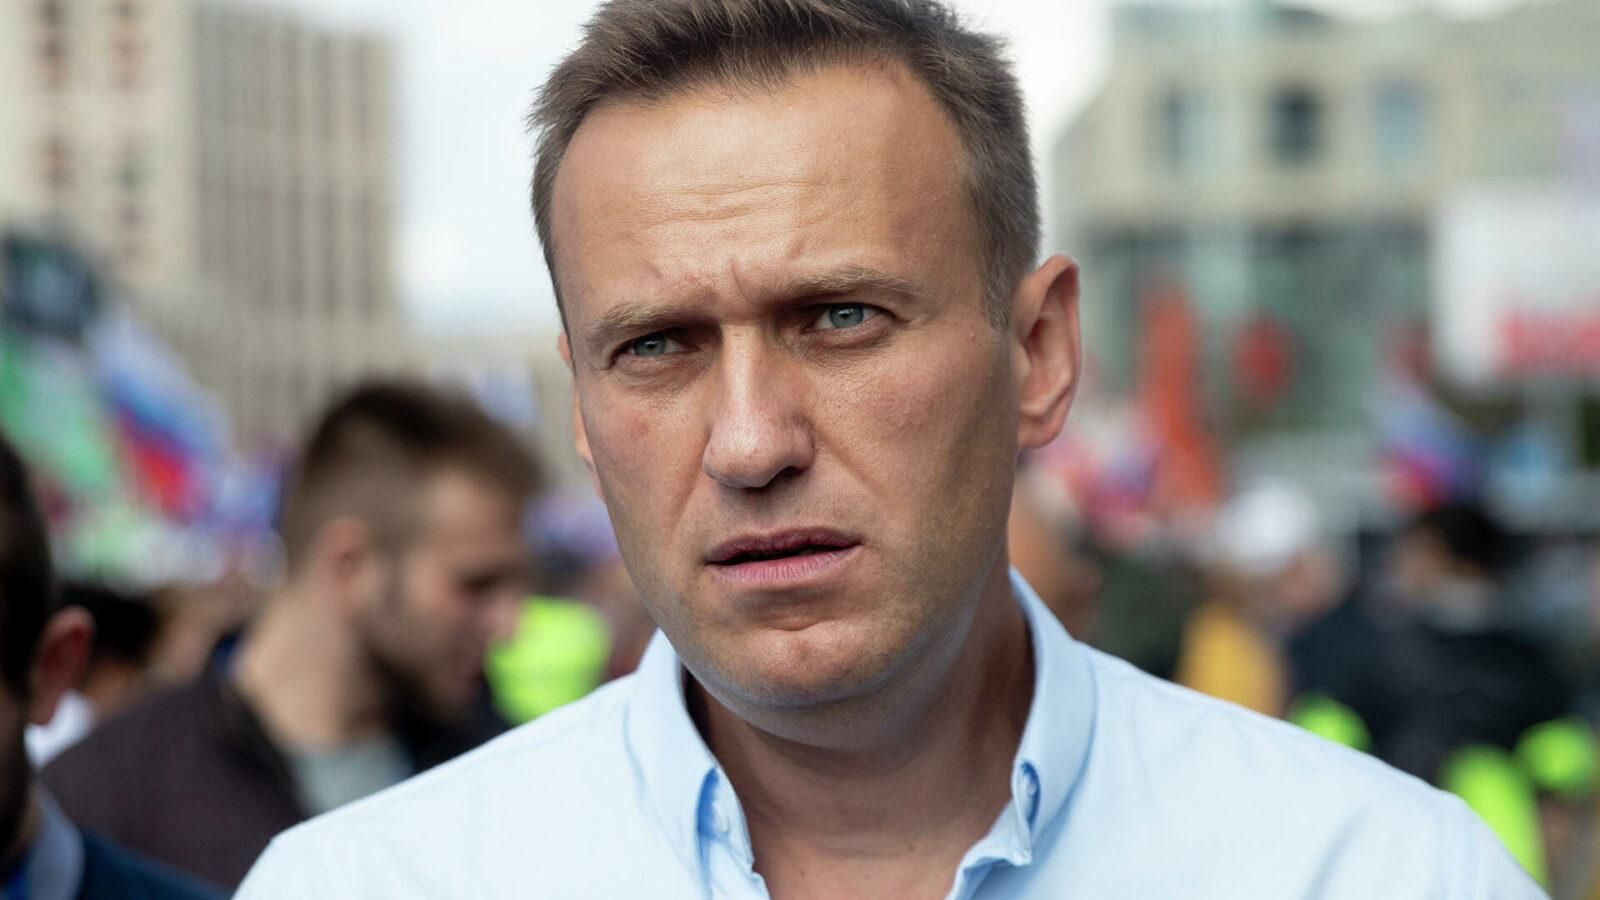 Лікарі вимагають надати медичну допомогу Навальному